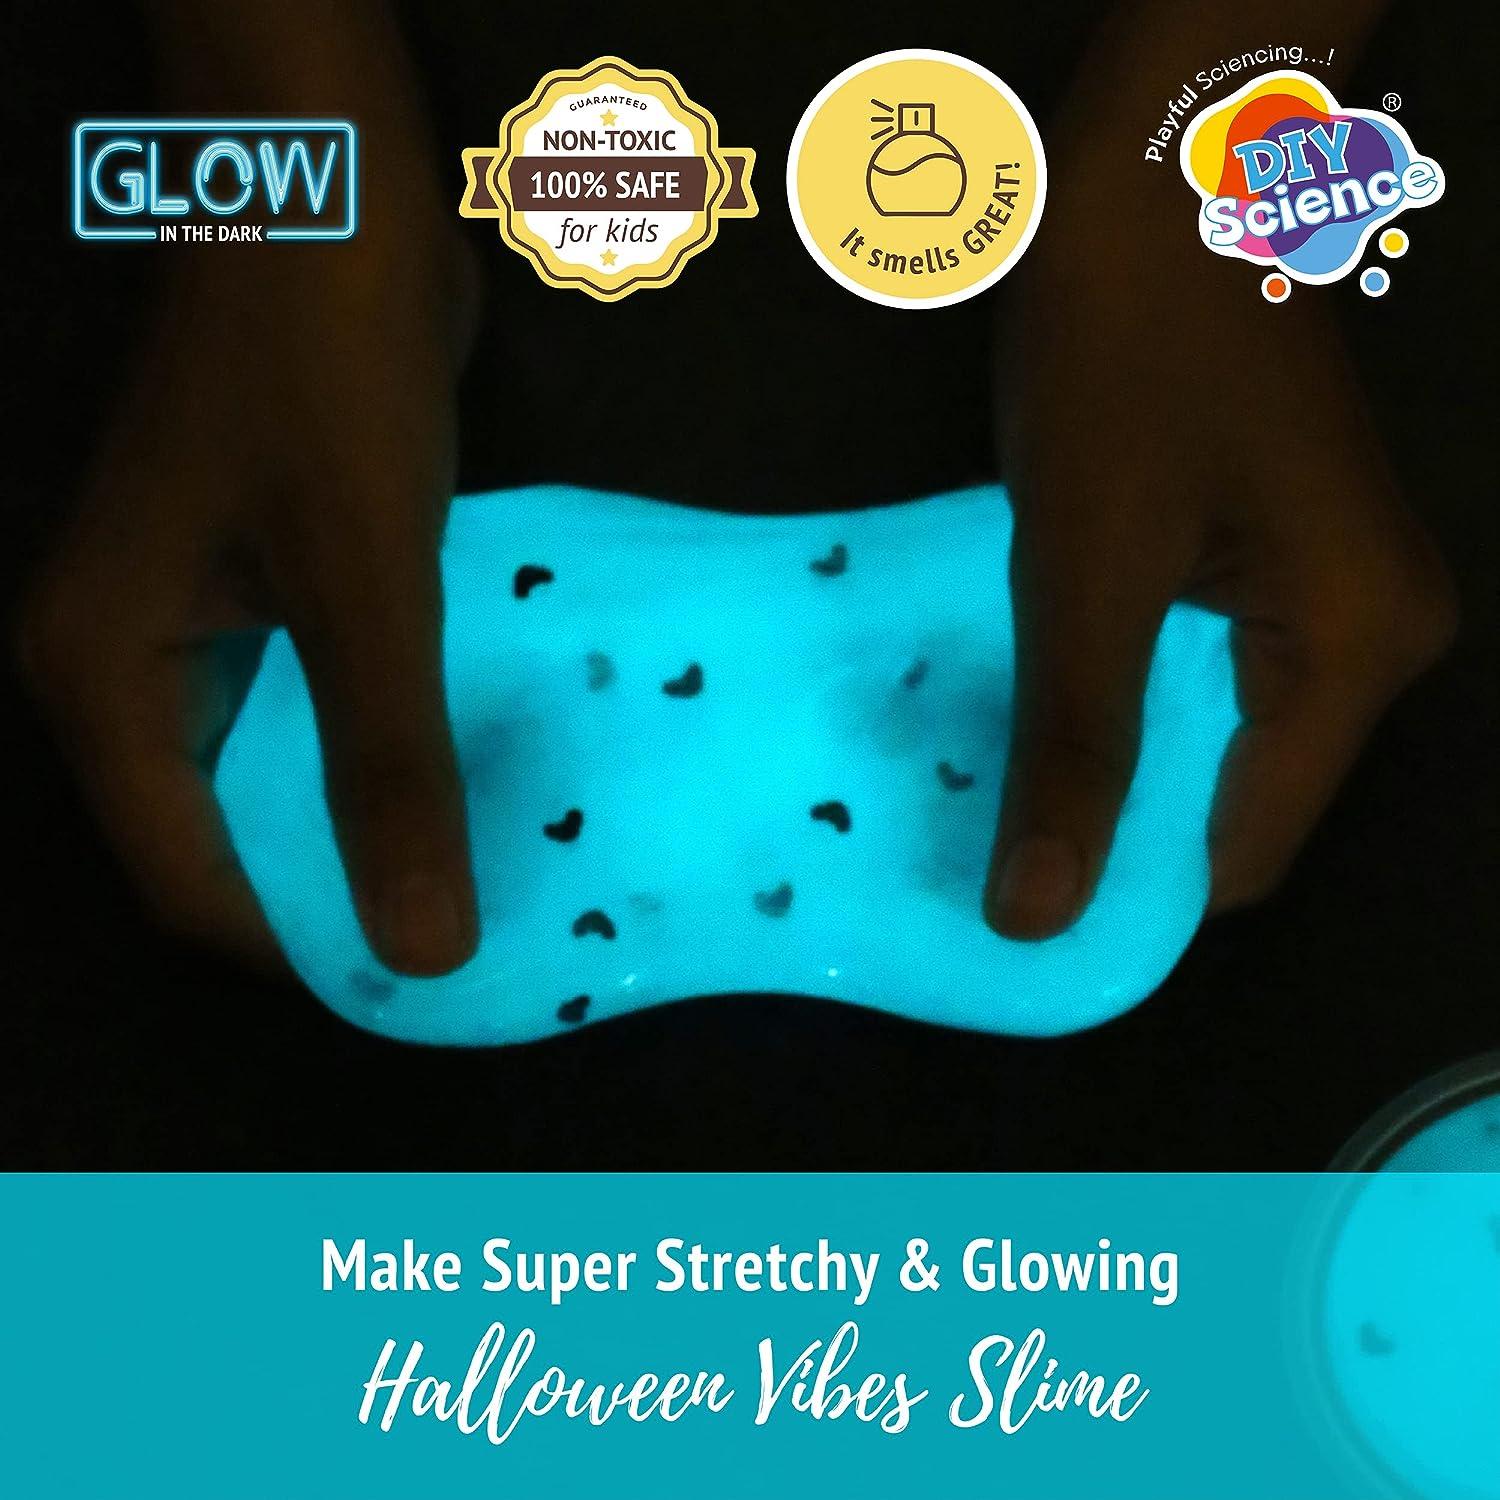 Dark Halloween Vibes Slime Kit - Diy Science